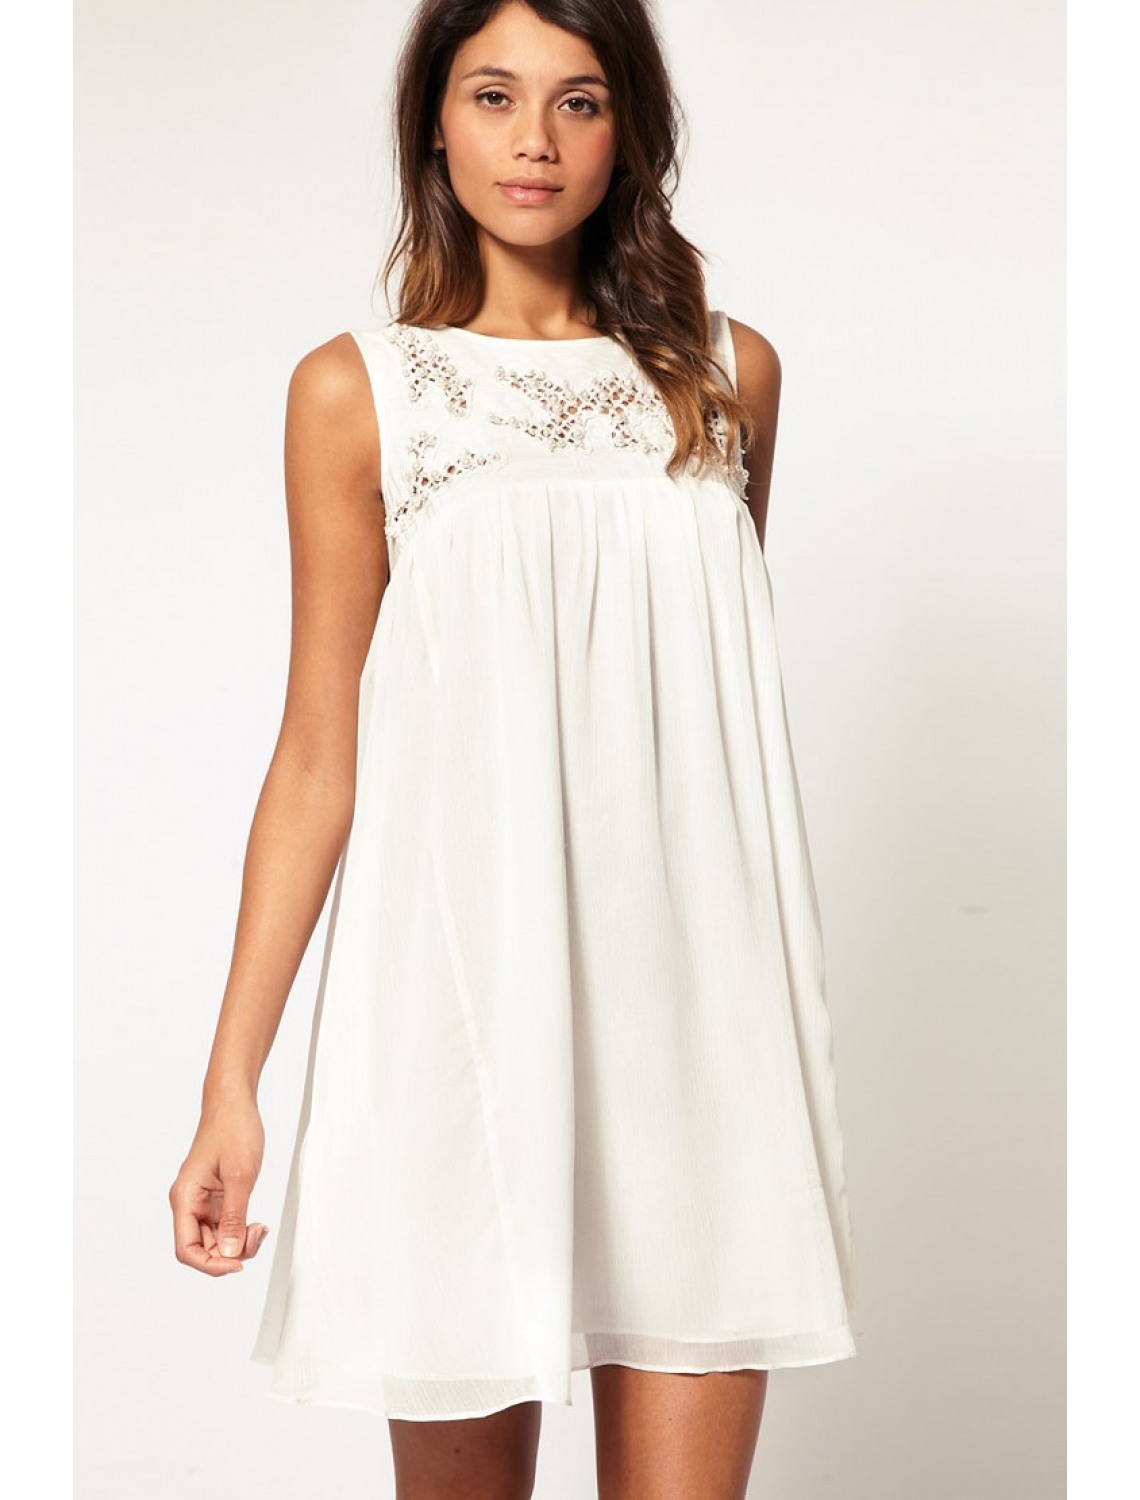 Abend Leicht Weißes Kleid Kurz VertriebFormal Schön Weißes Kleid Kurz Boutique